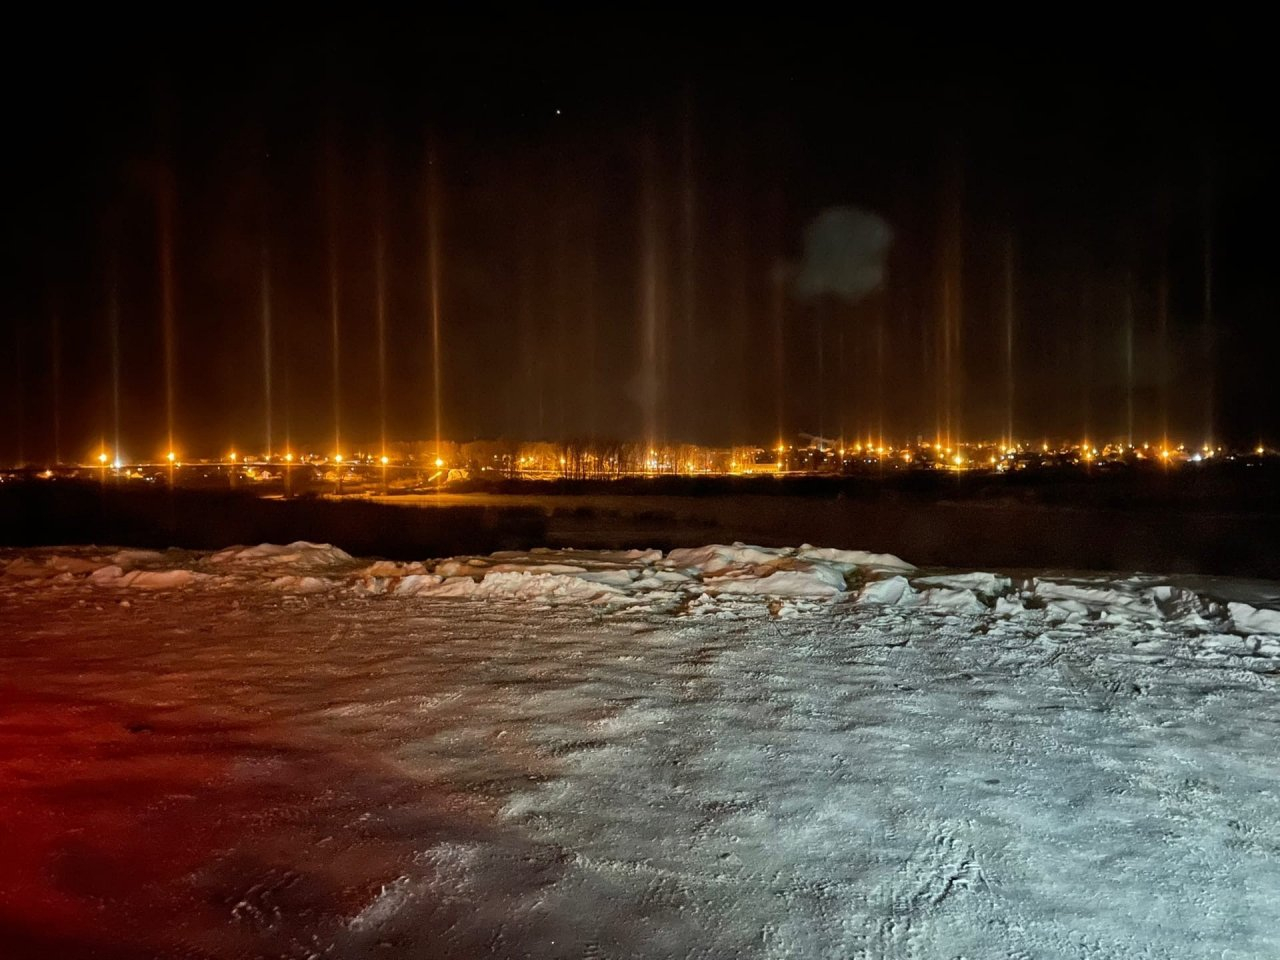 Жители Кировской области заметили в небе необычное природное явление